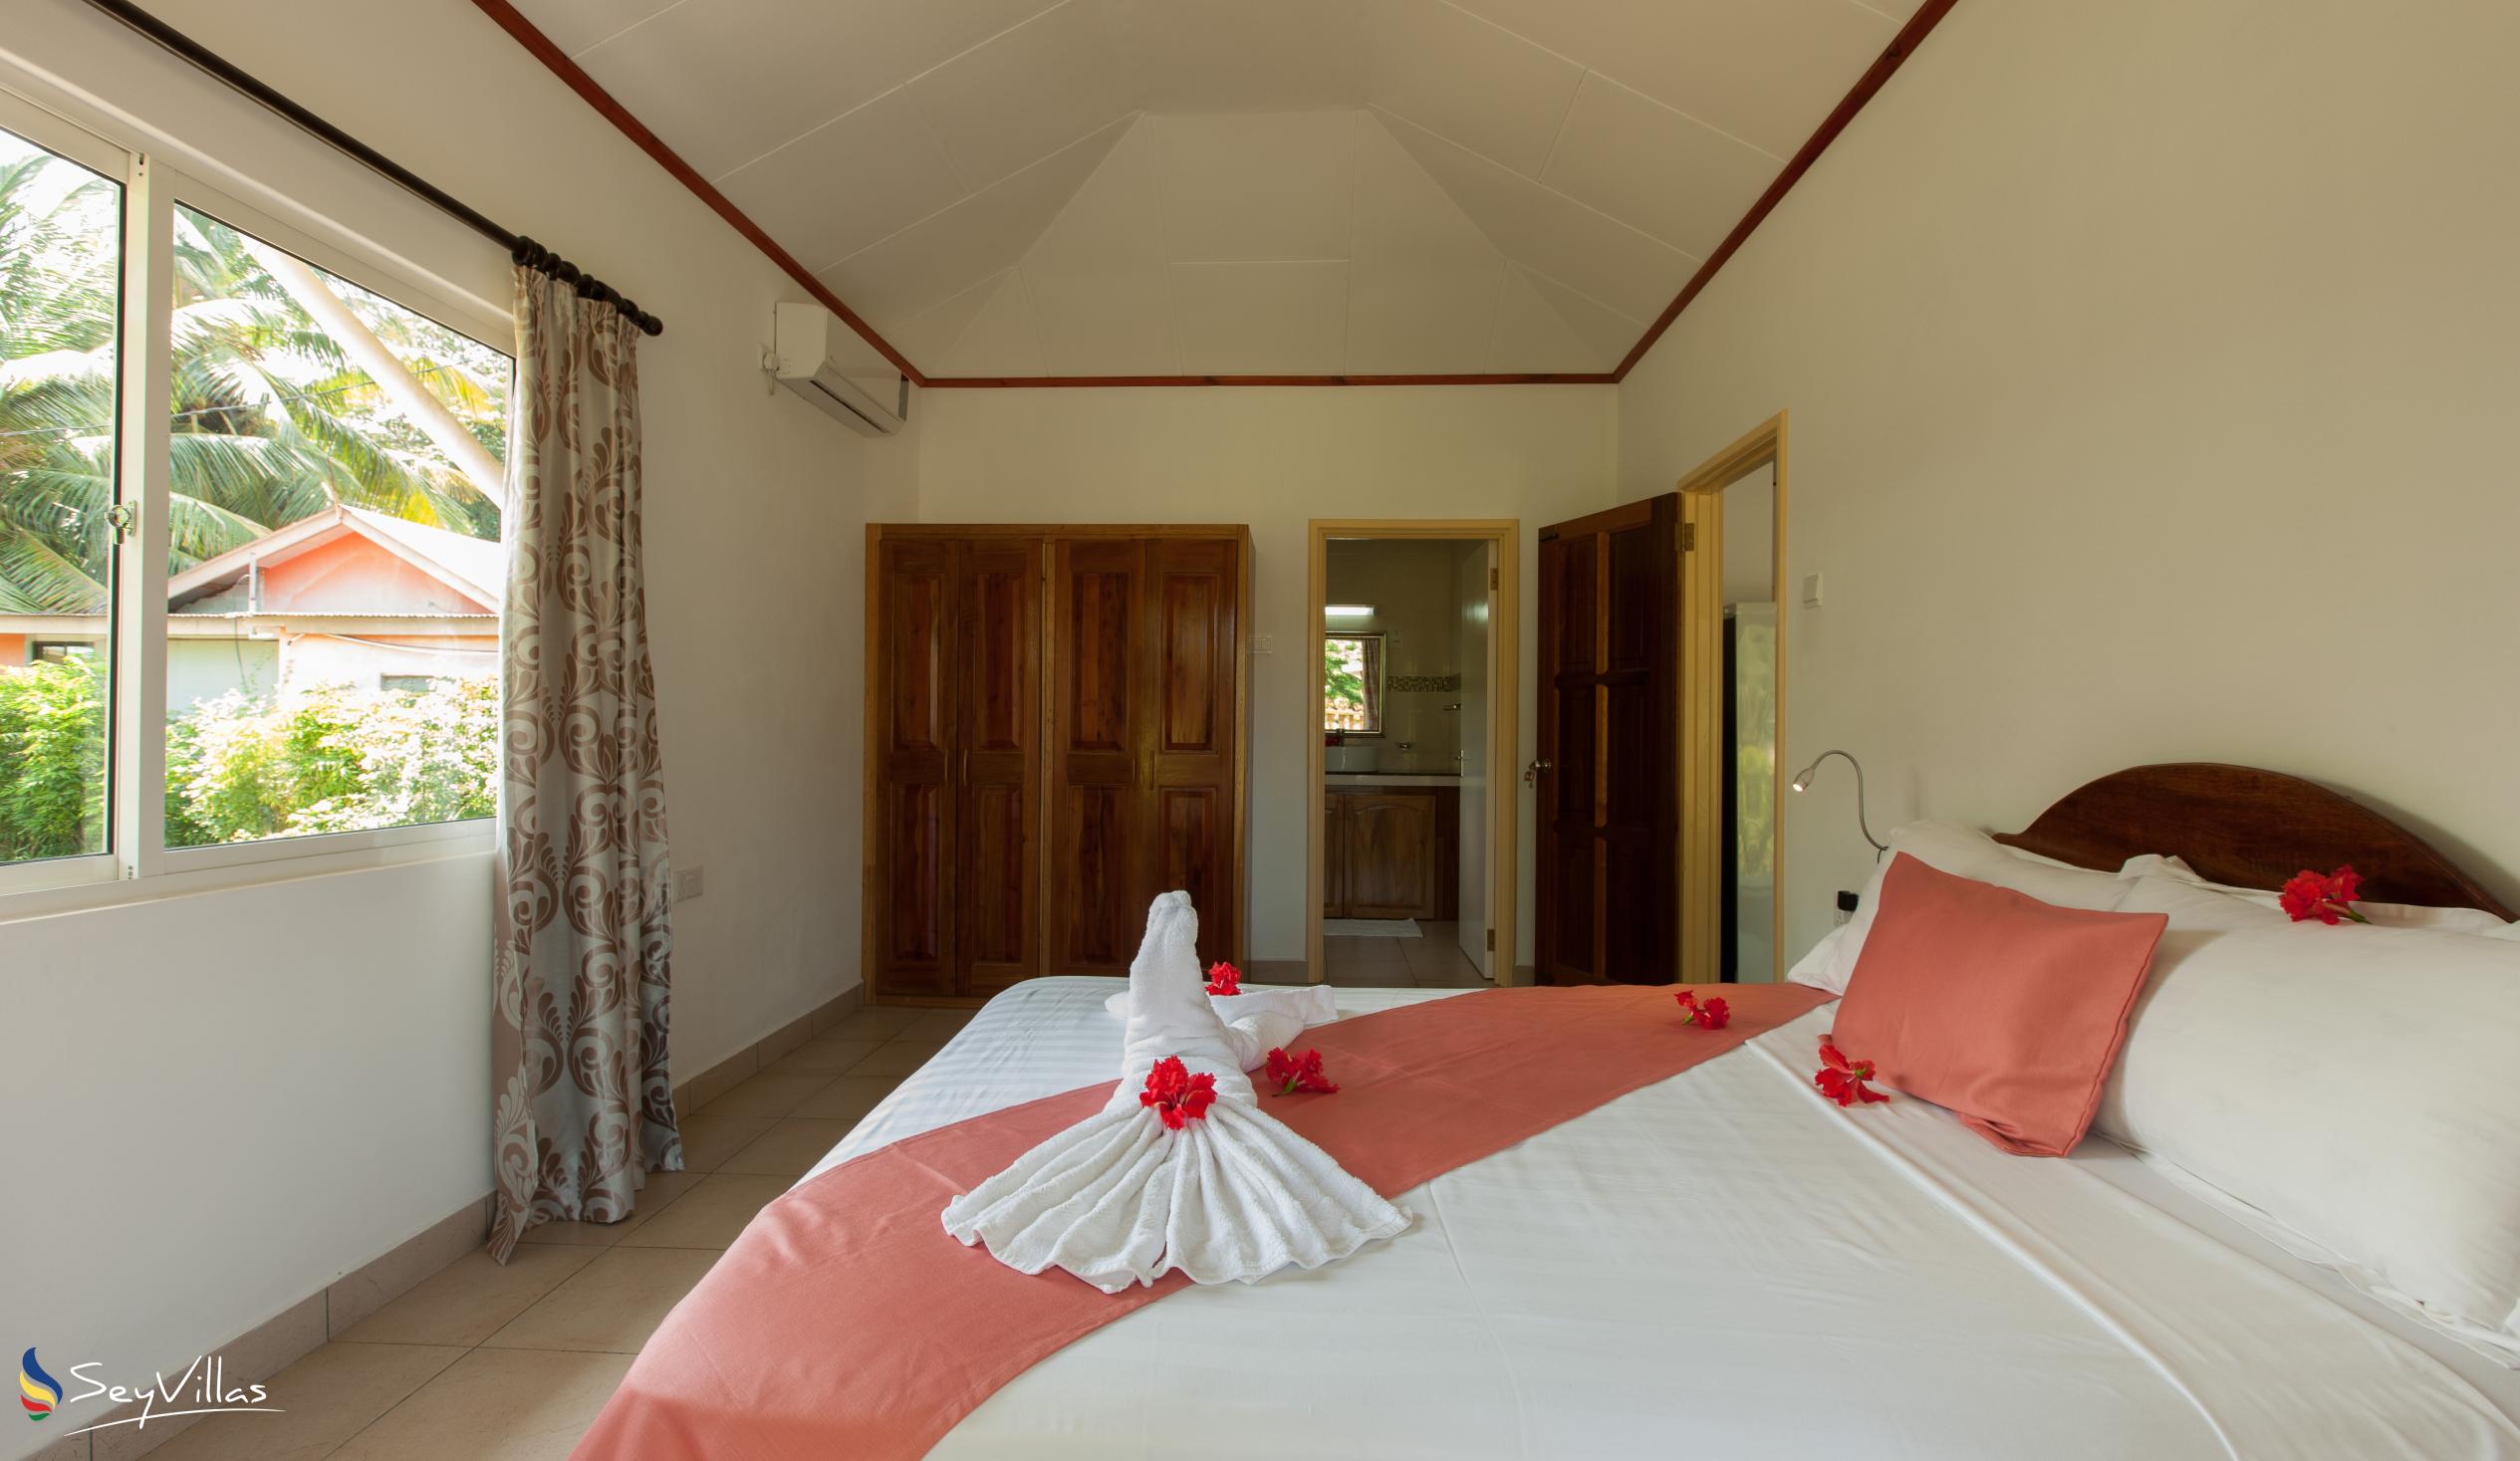 Foto 52: Hostellerie La Digue - Chalet 2 chambres - La Digue (Seychelles)